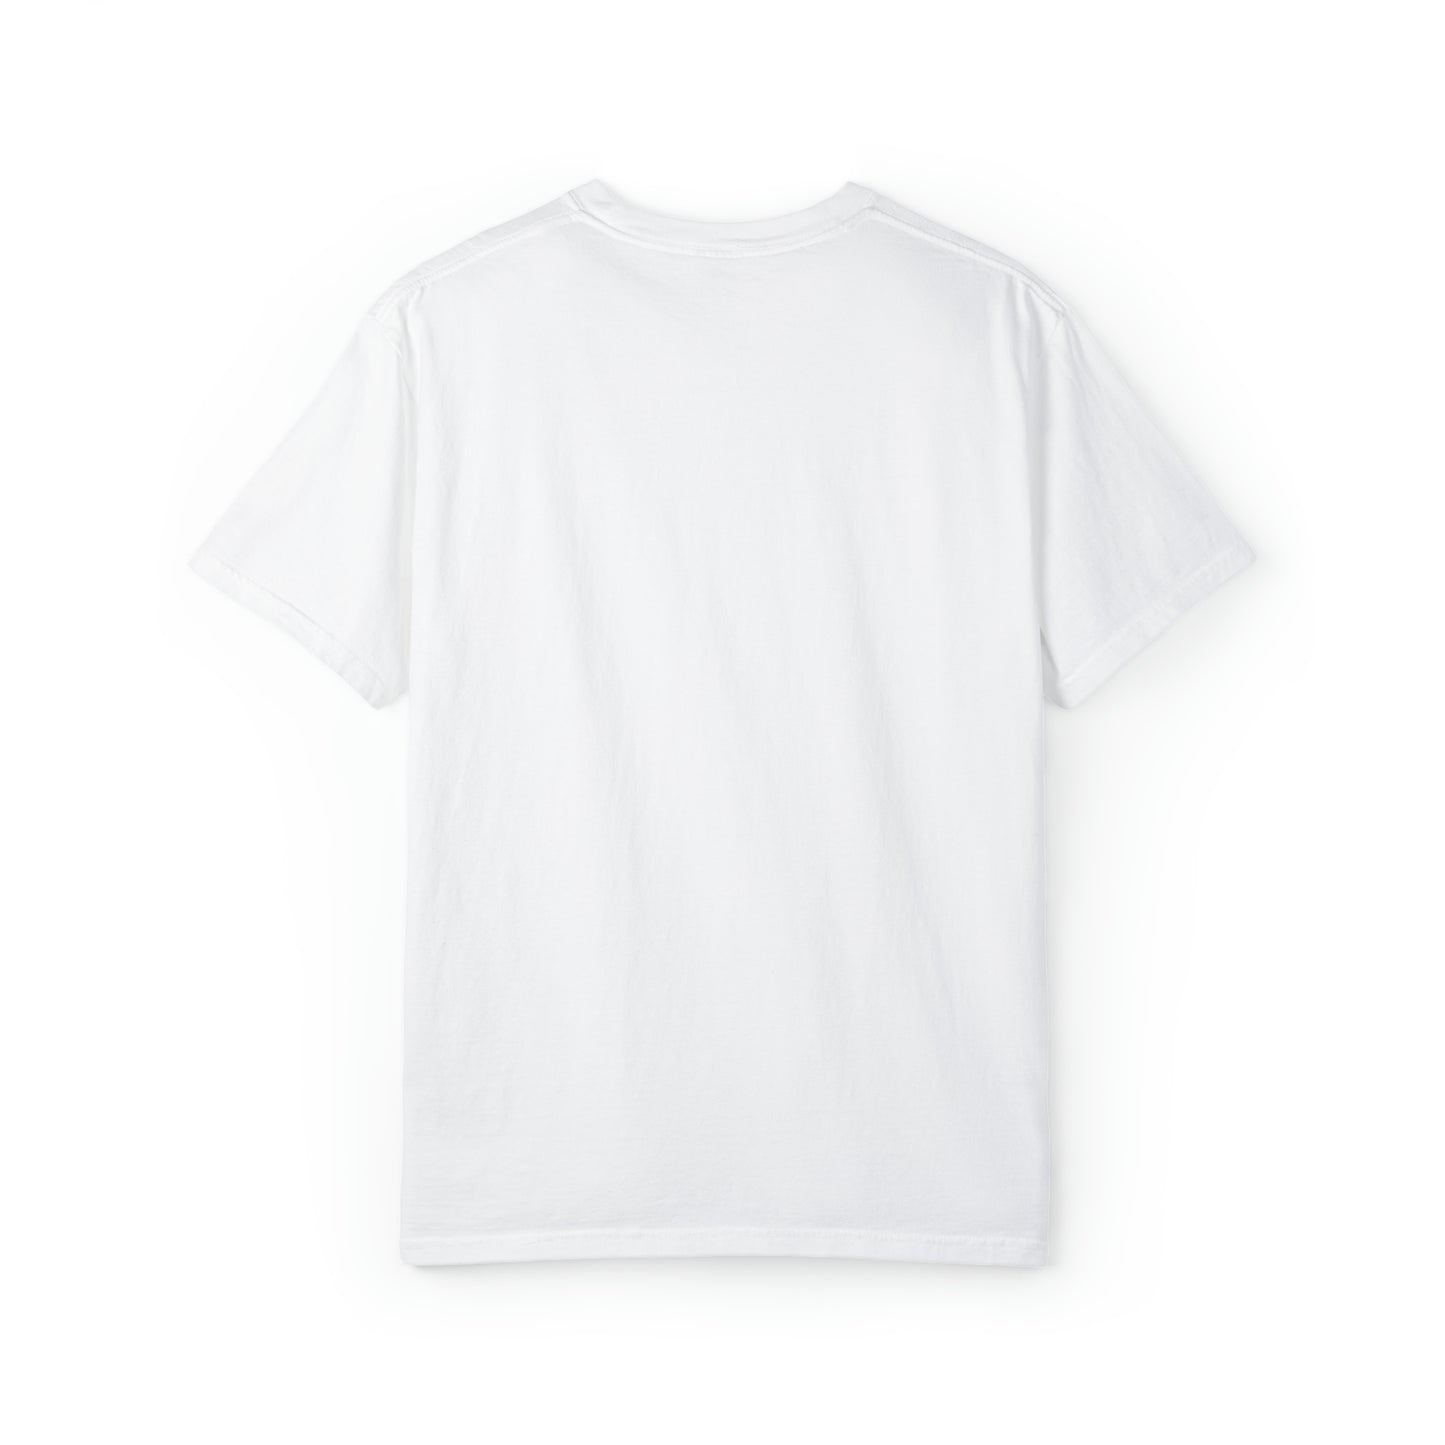 Holiday Vibe - Unisex Garment-Dyed T-shirt